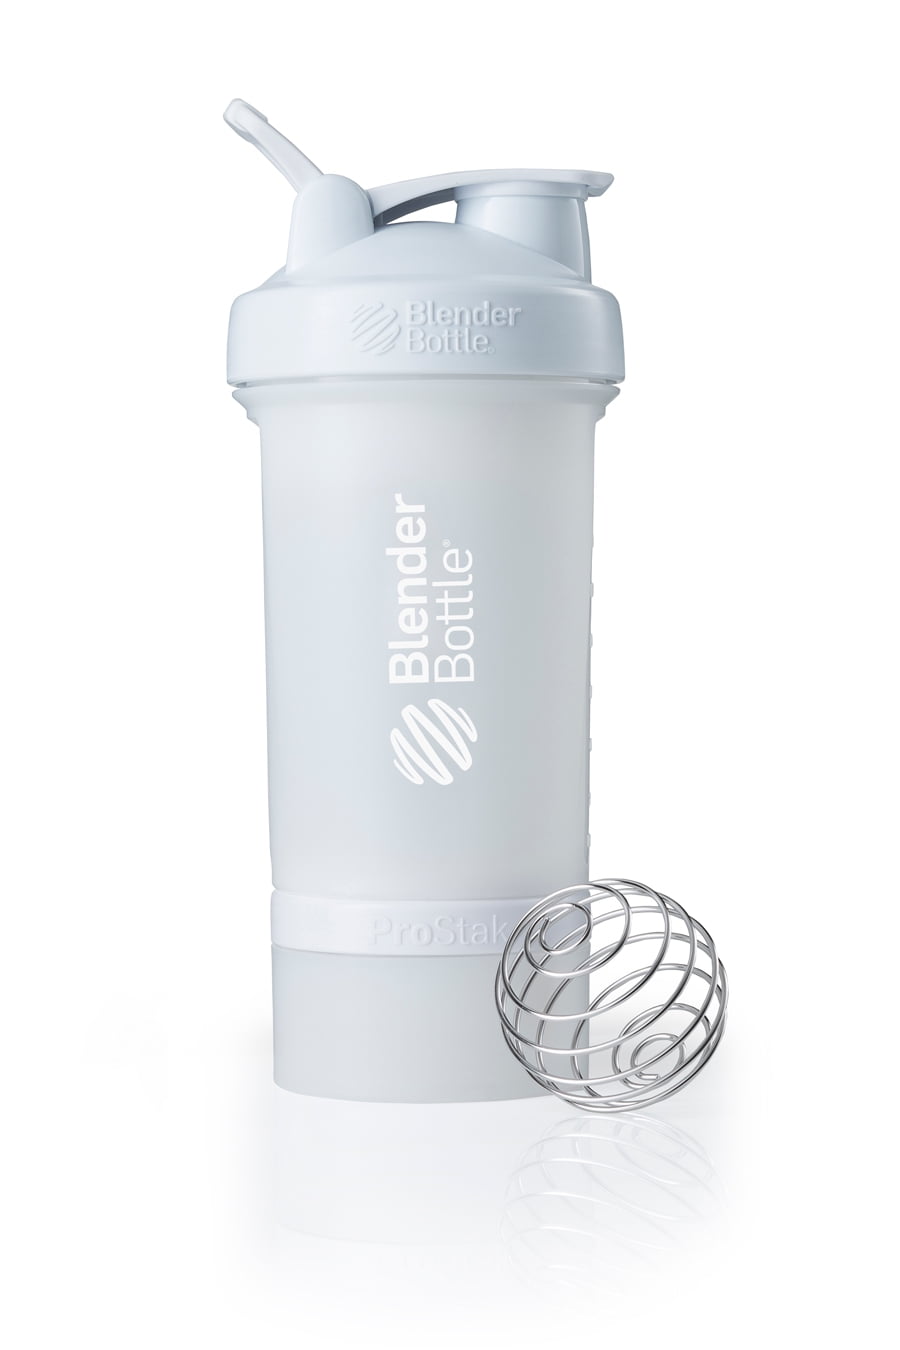 Blender Bottle Prostak Review: Is This Shaker Bottle Any Good? 